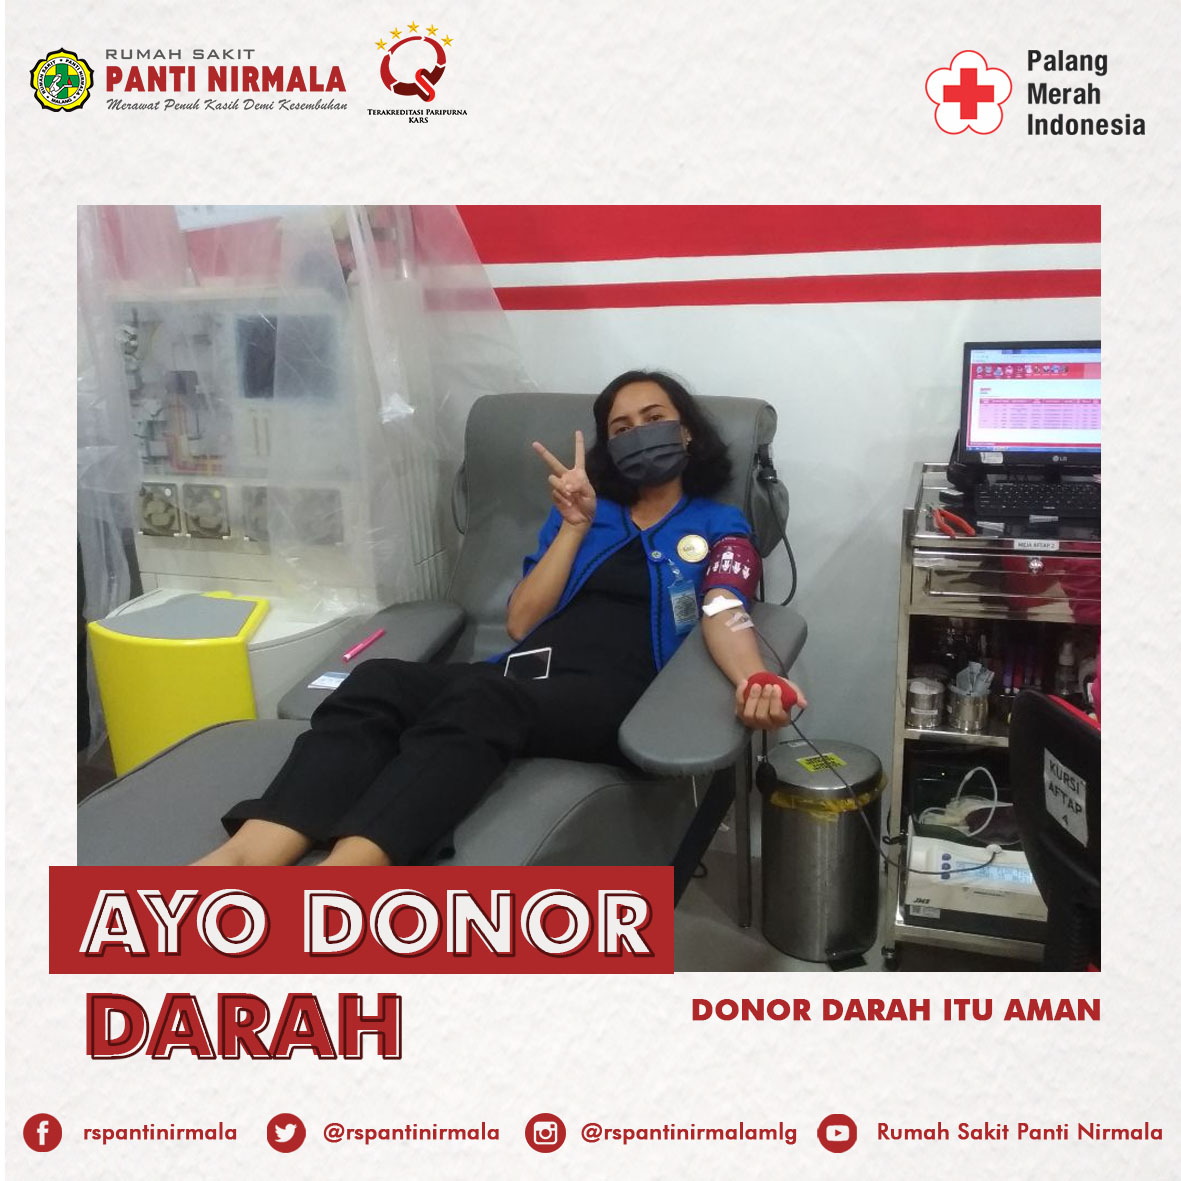 Ayo Donor Darah - Donor darah itu aman